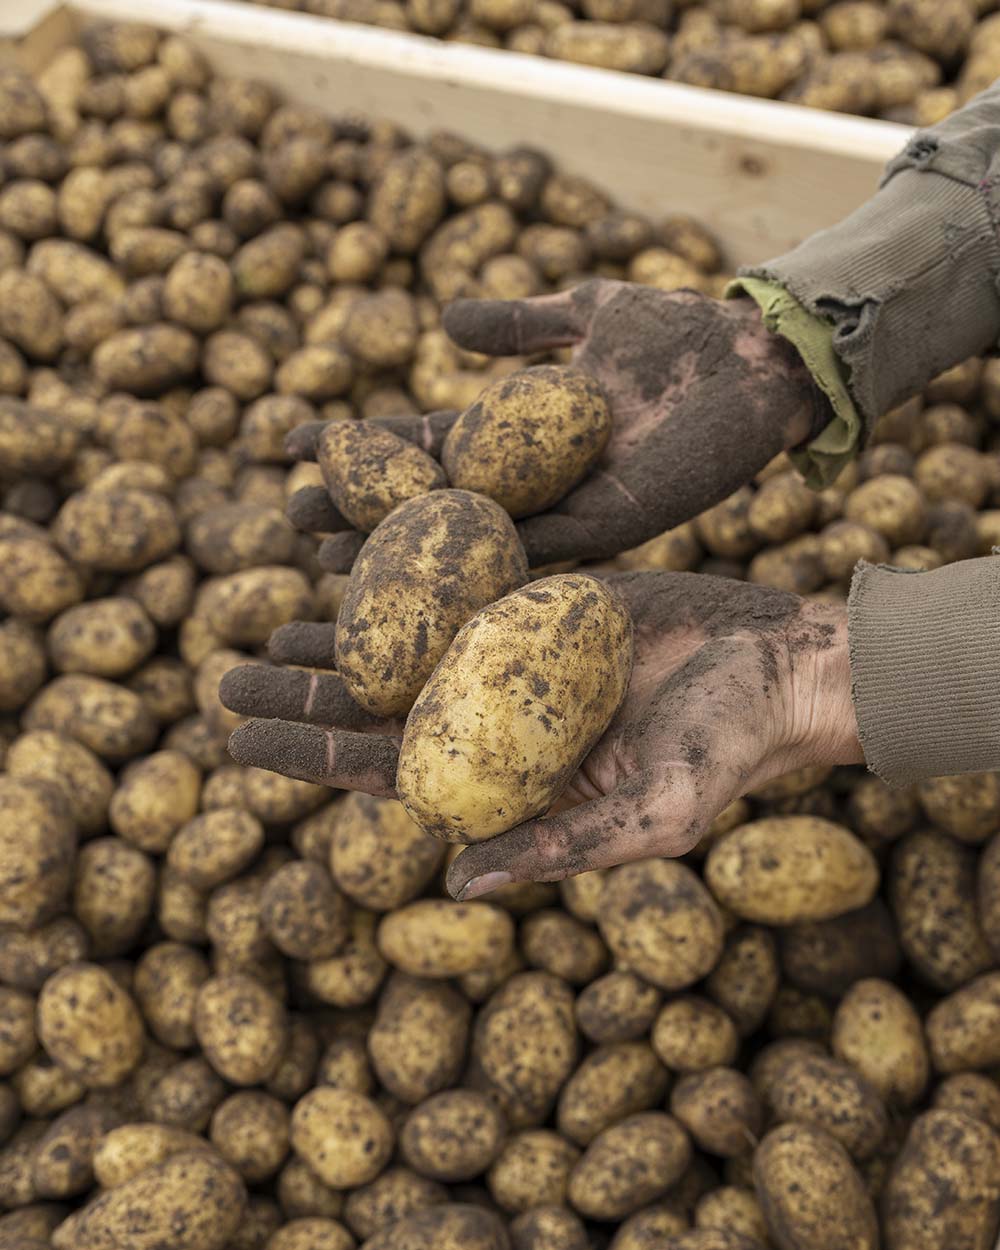 Landwirtin Lenke hält zwei Kartoffeln in der Hand. Darunter sind die Kisten mit vielen frisch gerodeten Kartoffeln zu sehen. Lenkes Hände sind schmutzig, da sie den ganzen Vormittag gerodet hat.